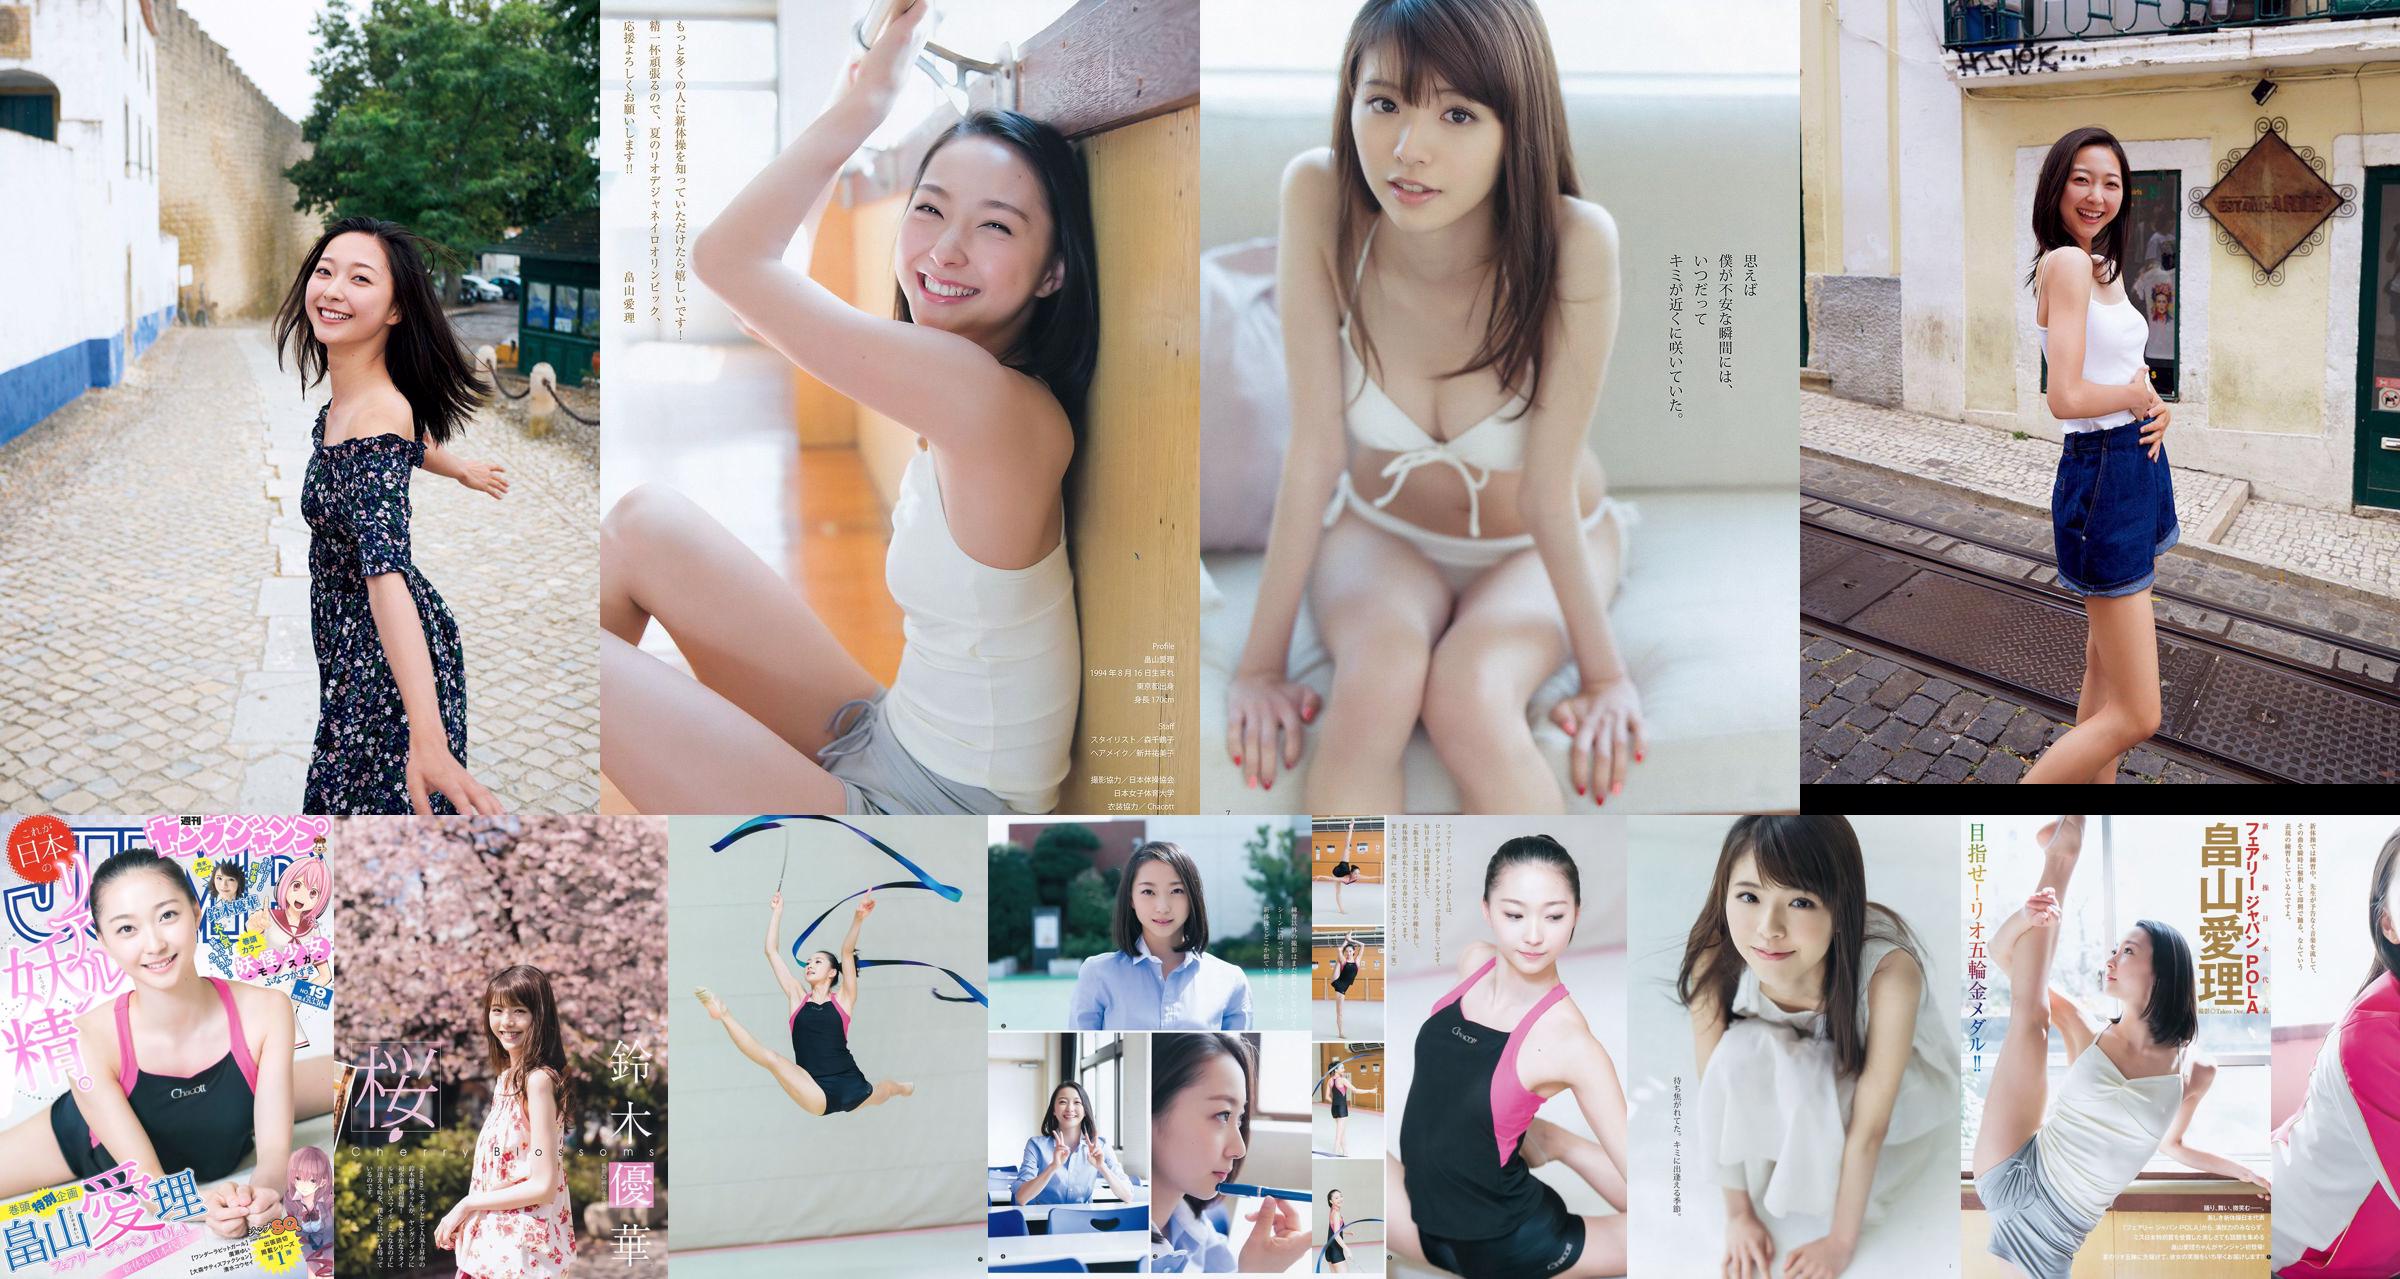 [ENTAME] Mai Shiraishi Nanase Nishino Rena Shimada Yui Takano Ảnh số tháng 3 năm 2014 No.3714da Trang 1